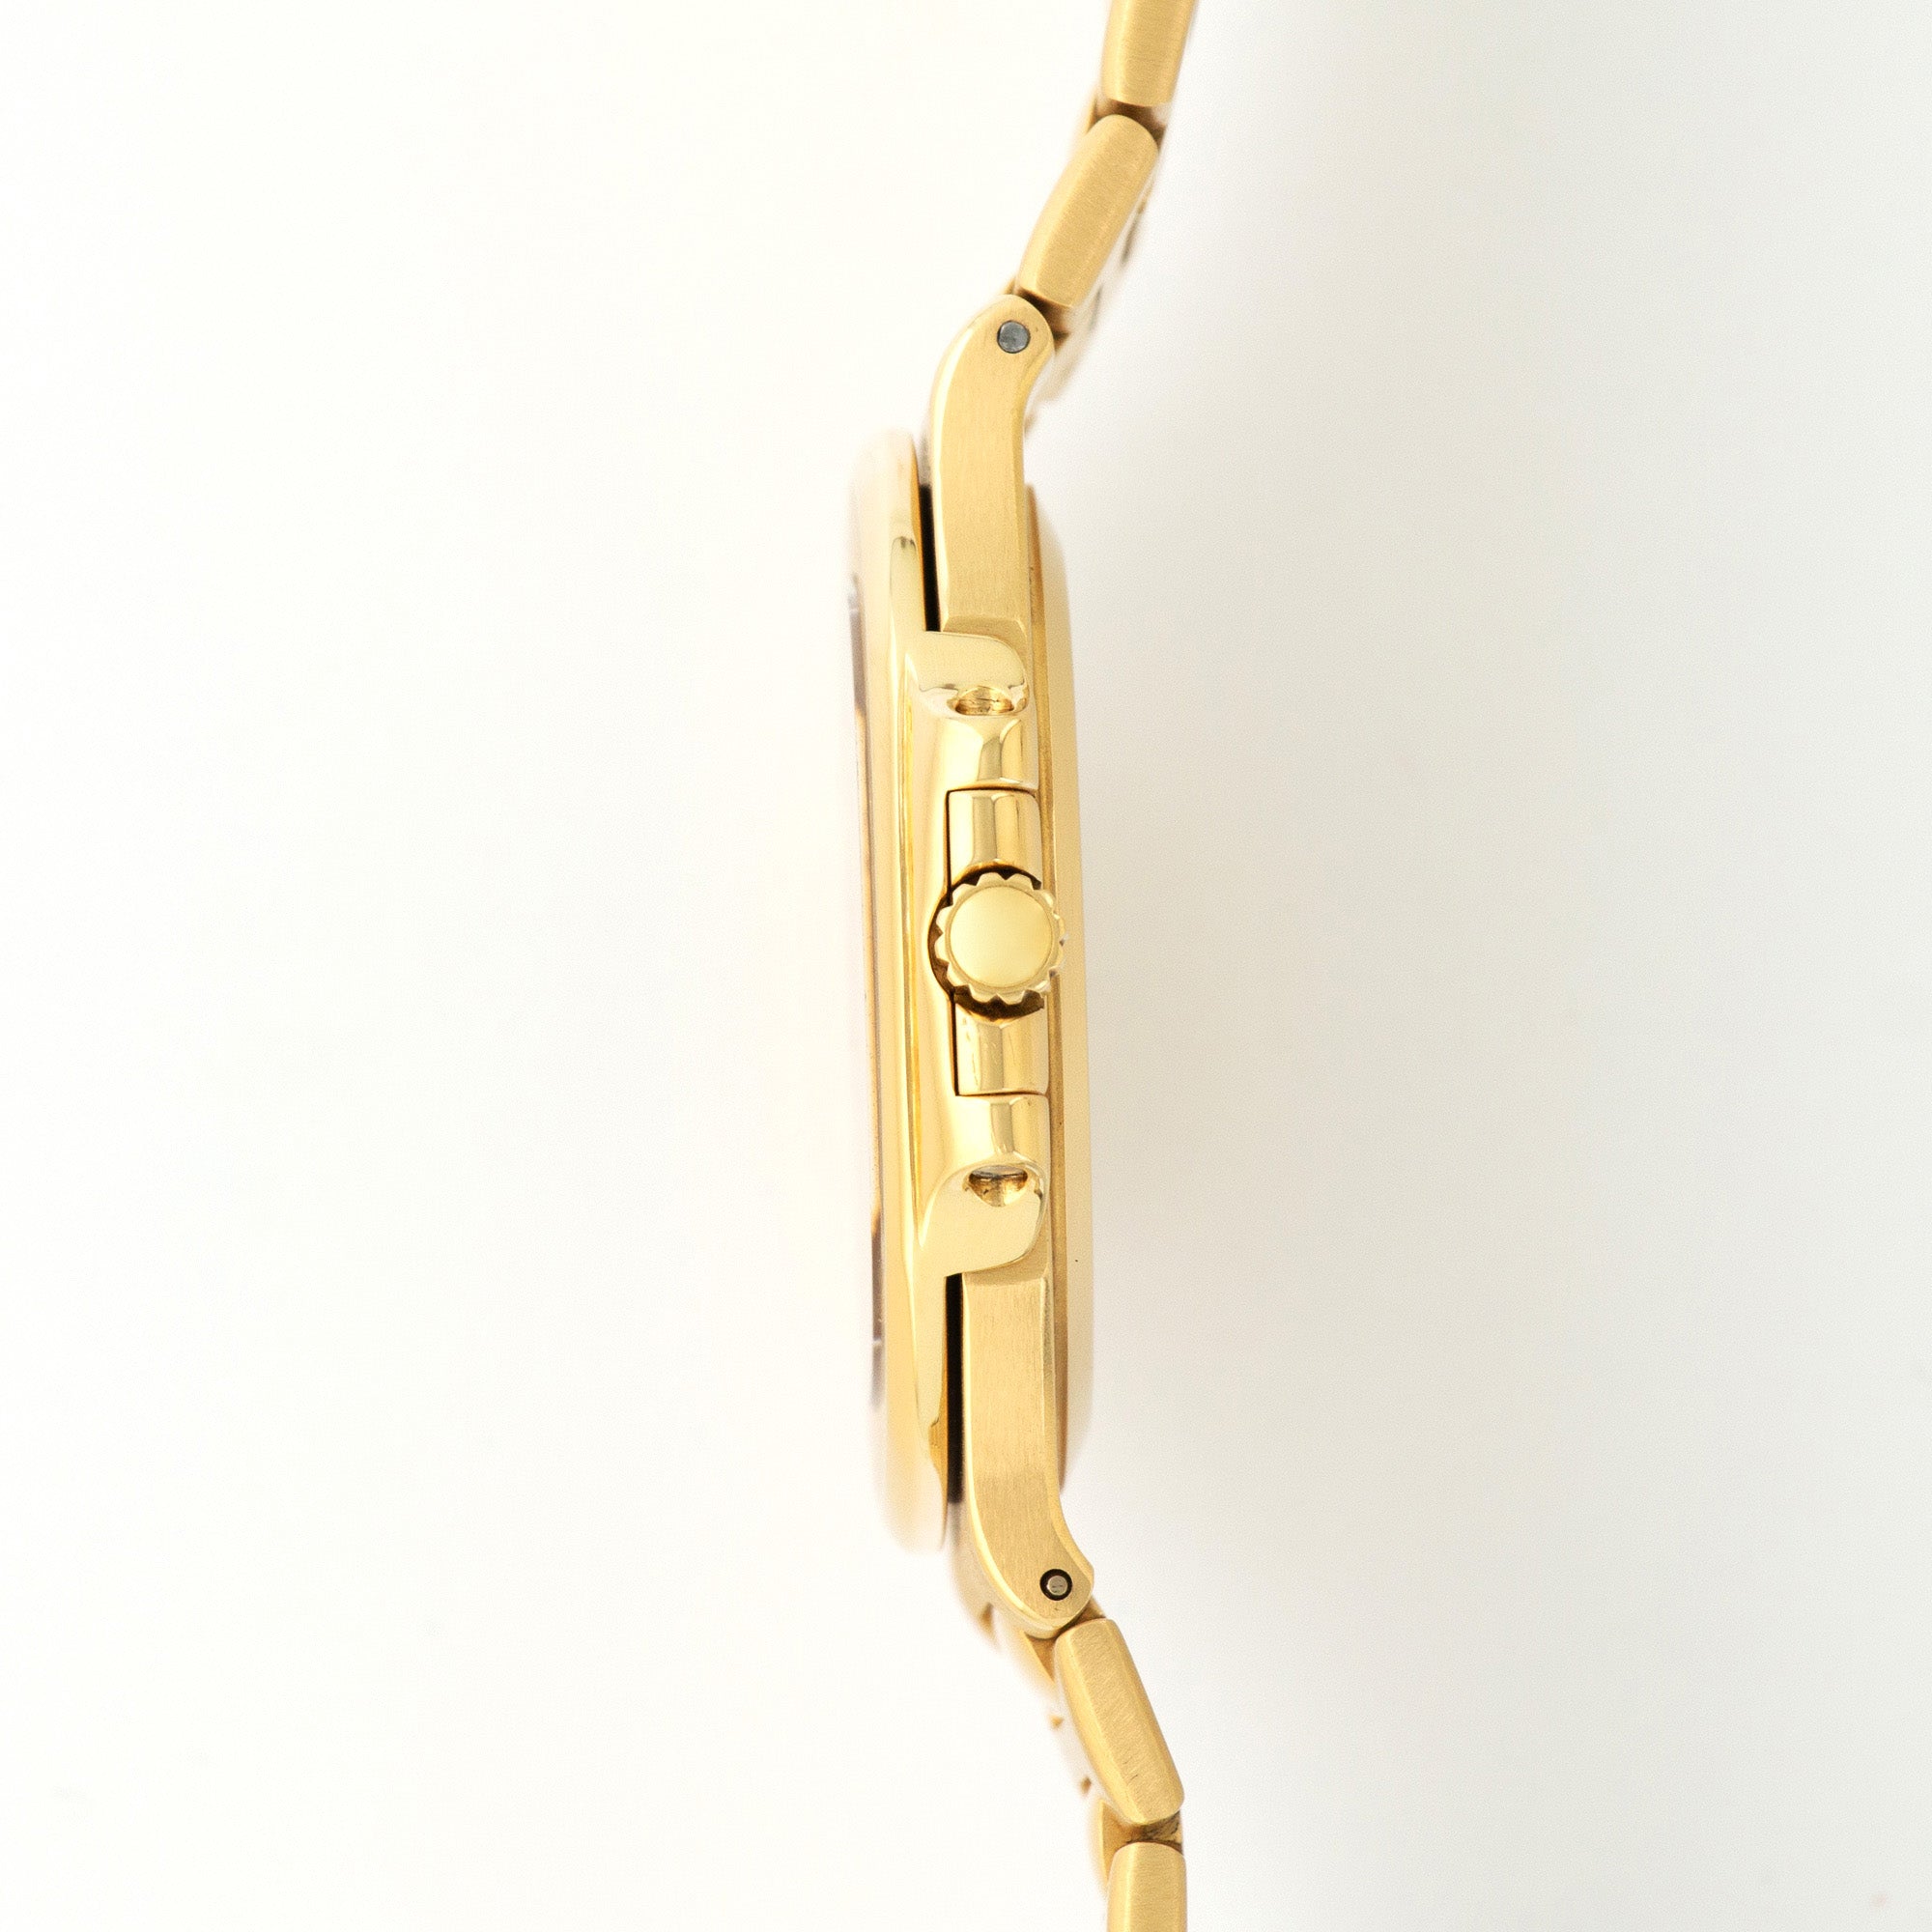 Patek Philippe - Patek Philippe Yellow Gold Nautilus Watch Ref. 3700 - The Keystone Watches